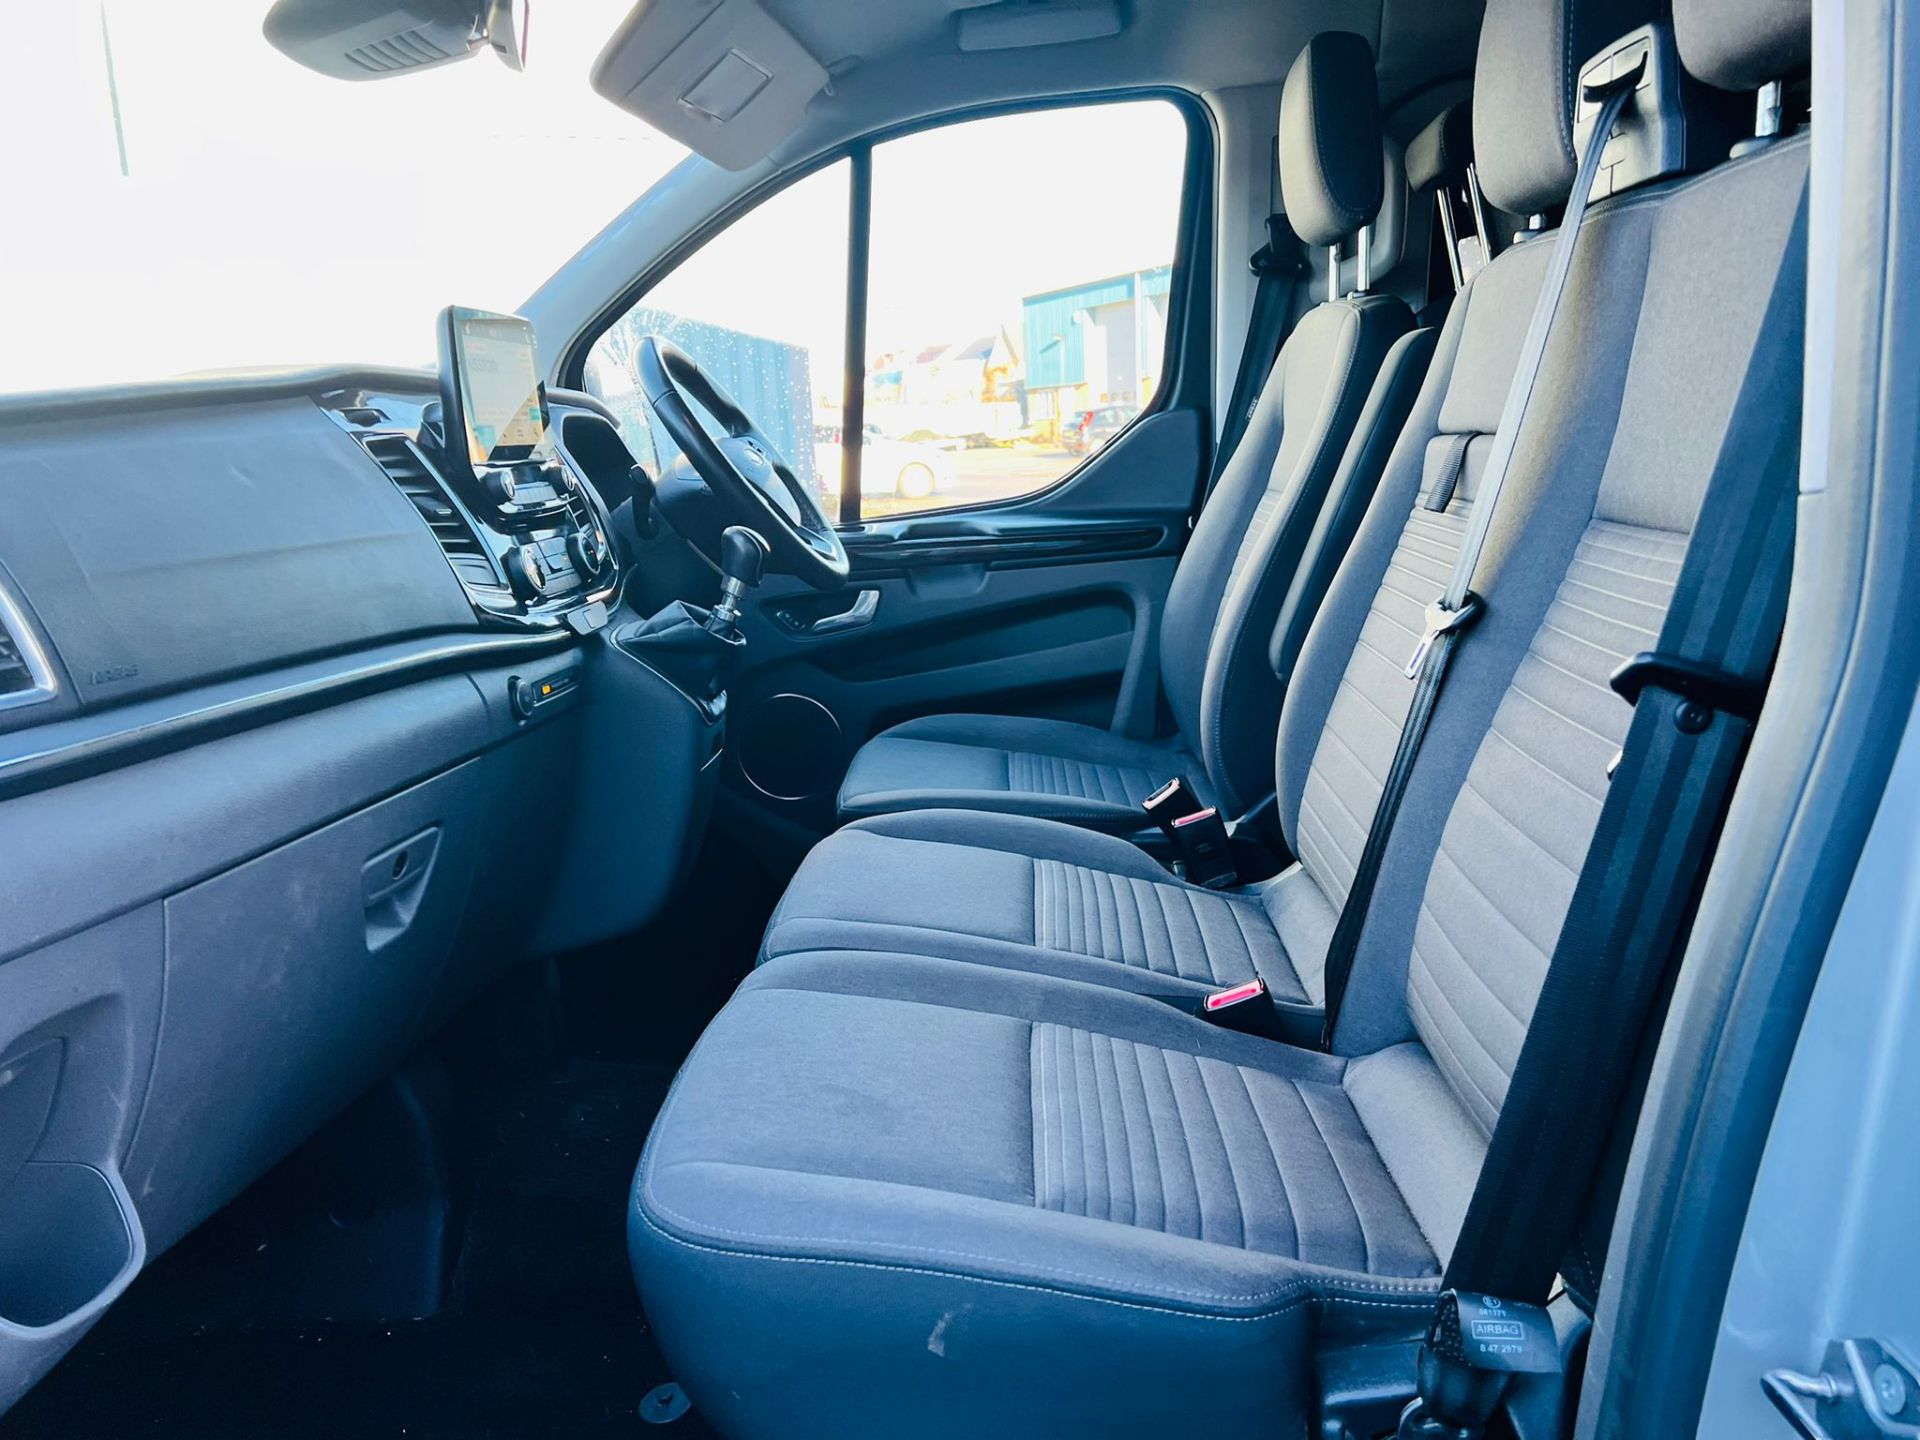 (Reserve Met) Ford Transit Custom 310 130 2.0 Tdci Titanium 9 Seater MiniBus 2019 Model - Air Con - - Image 10 of 36